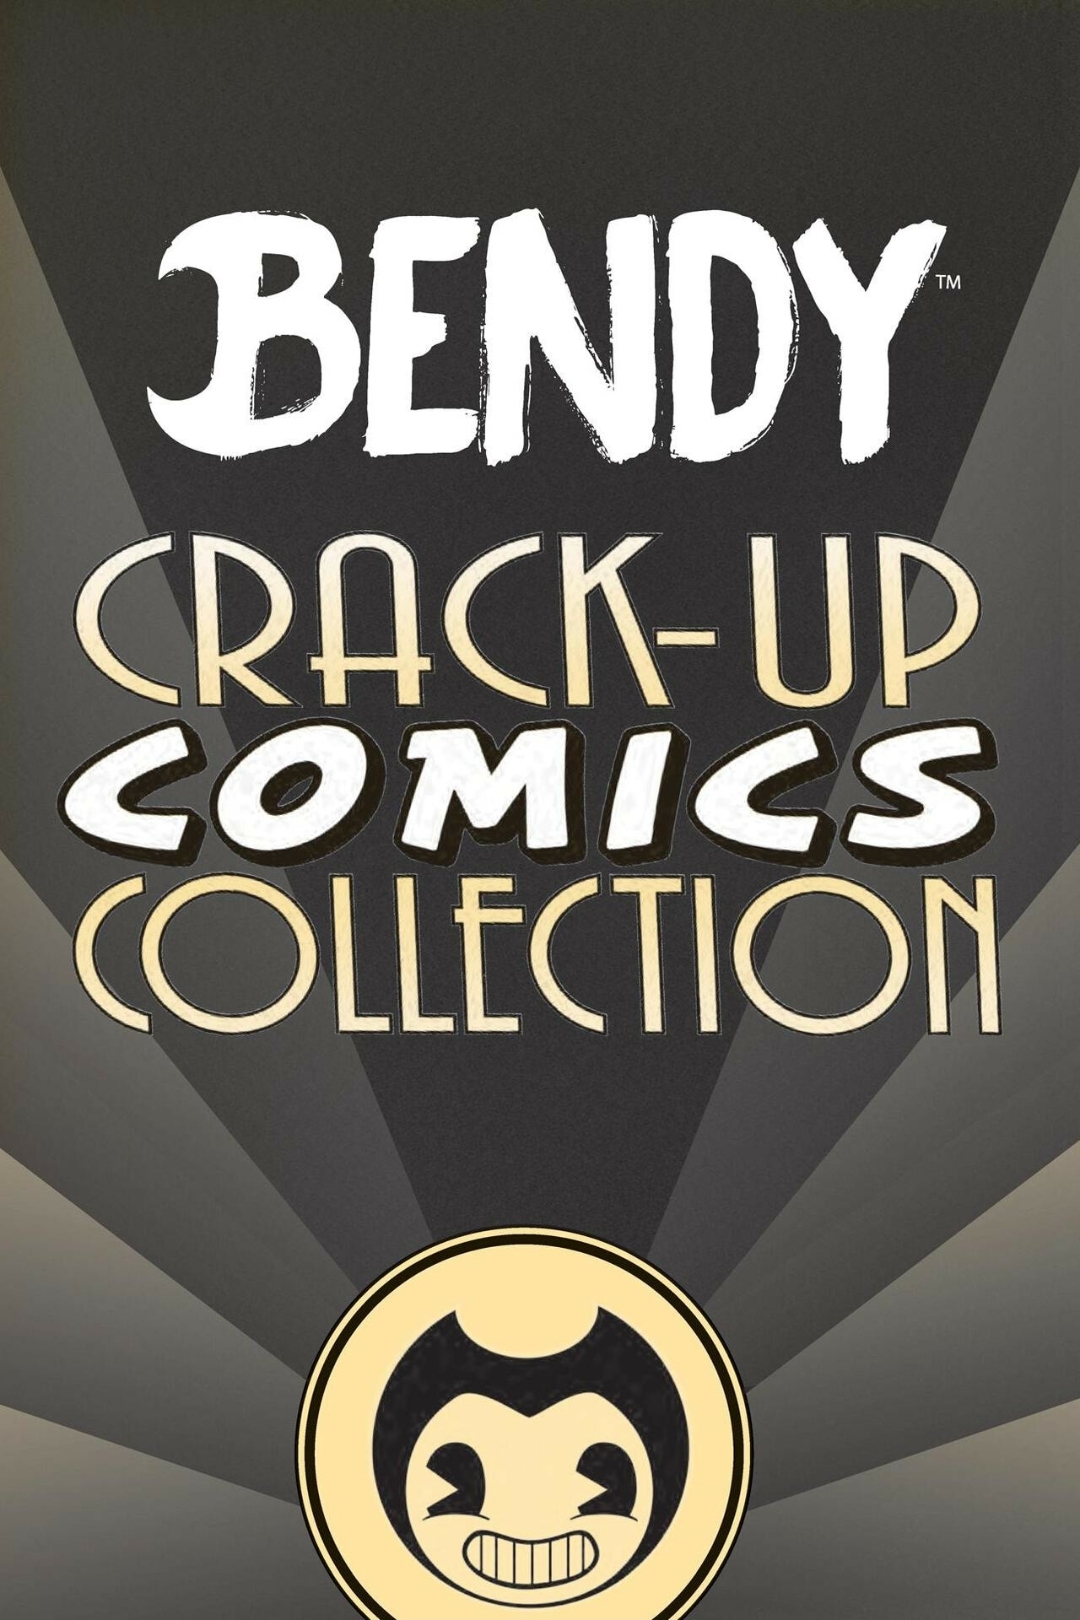 BENDY CRACK-UP COMICS COLLECTION - 封面和副頁預覽 - 1